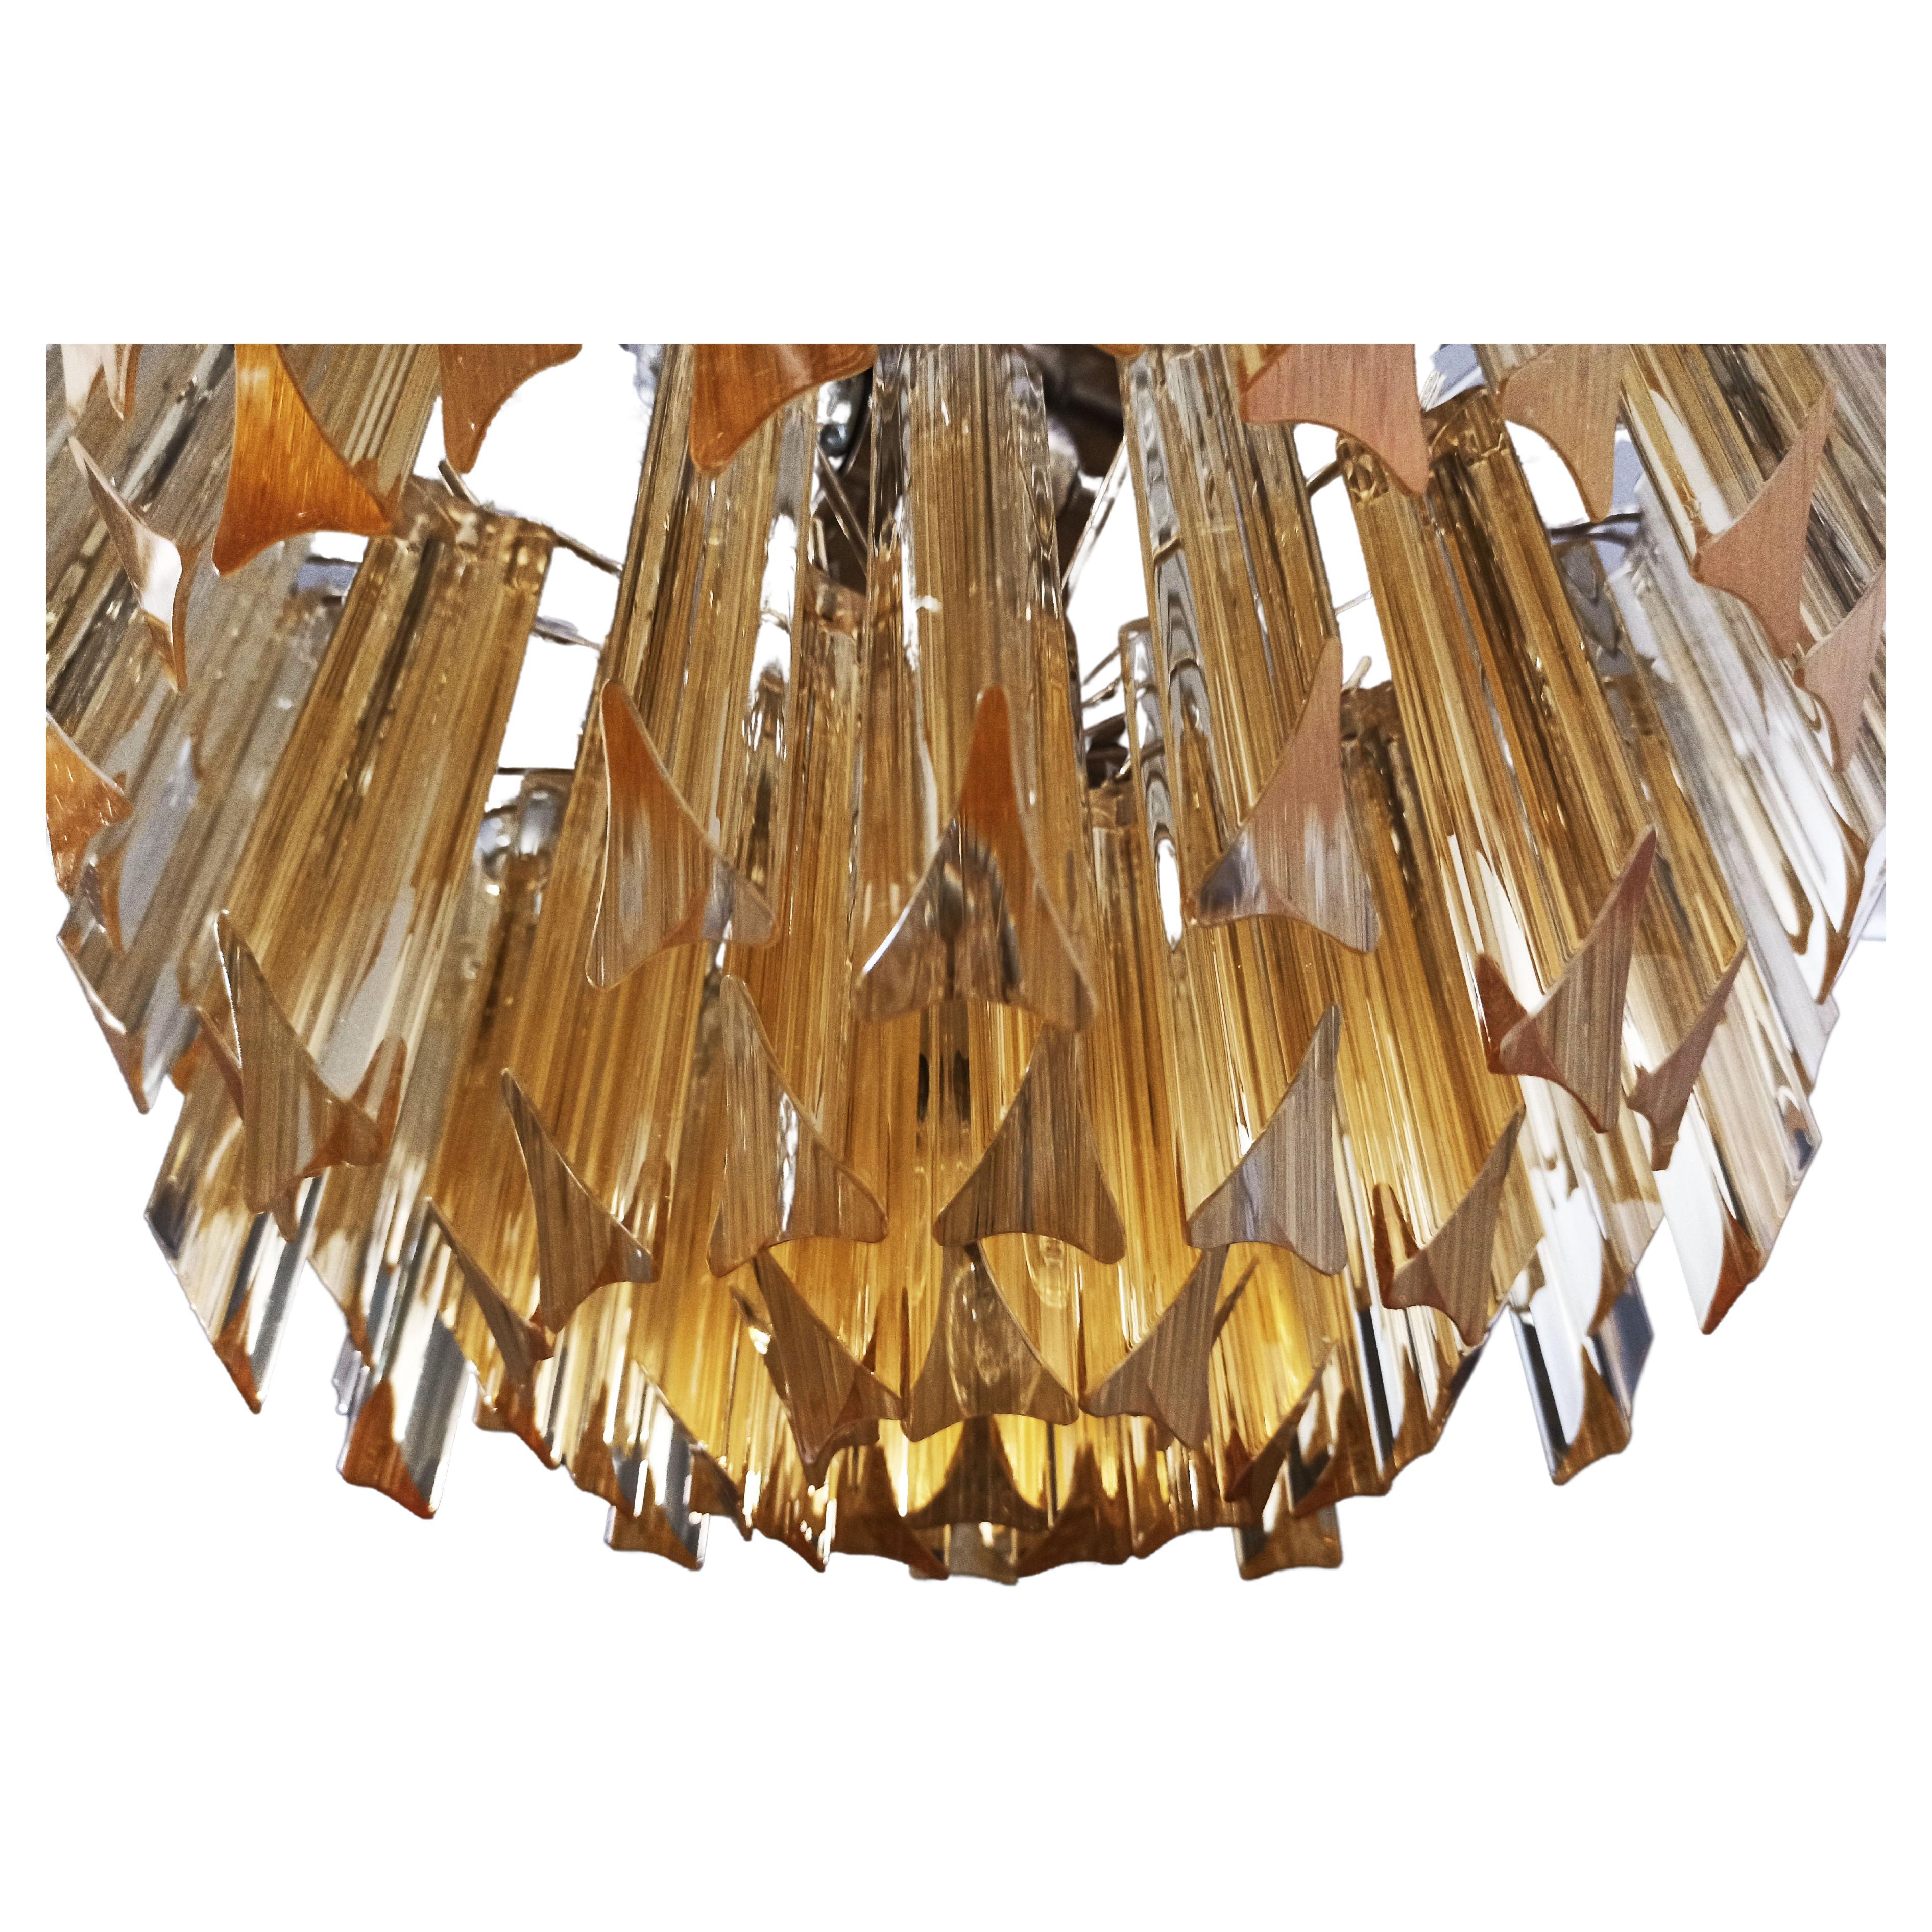 Vintage By Murano chandeliers vintage chacun fait par 107 Murano cristal clair amber prism triedri dans un cadre de métal nickel. Période : 1980'S
Dimensions : 41,90 pouces de hauteur (108 cm) avec chaîne ; 17,70 pouces de hauteur (45 cm) sans